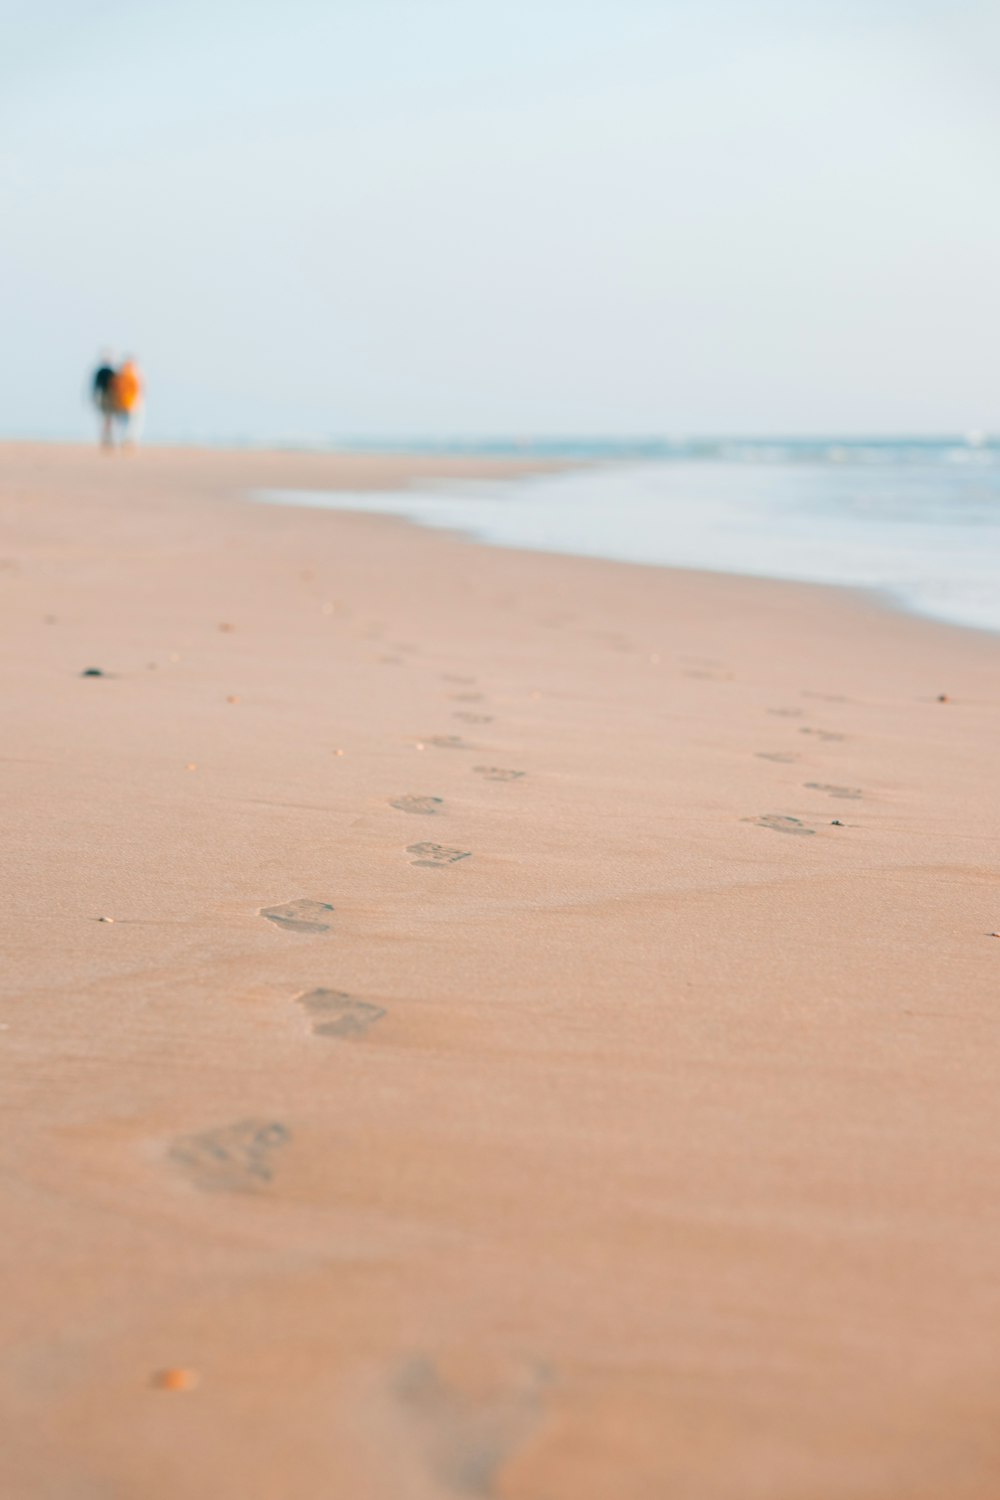 une personne marchant le long d’une plage avec des empreintes de pas dans le sable